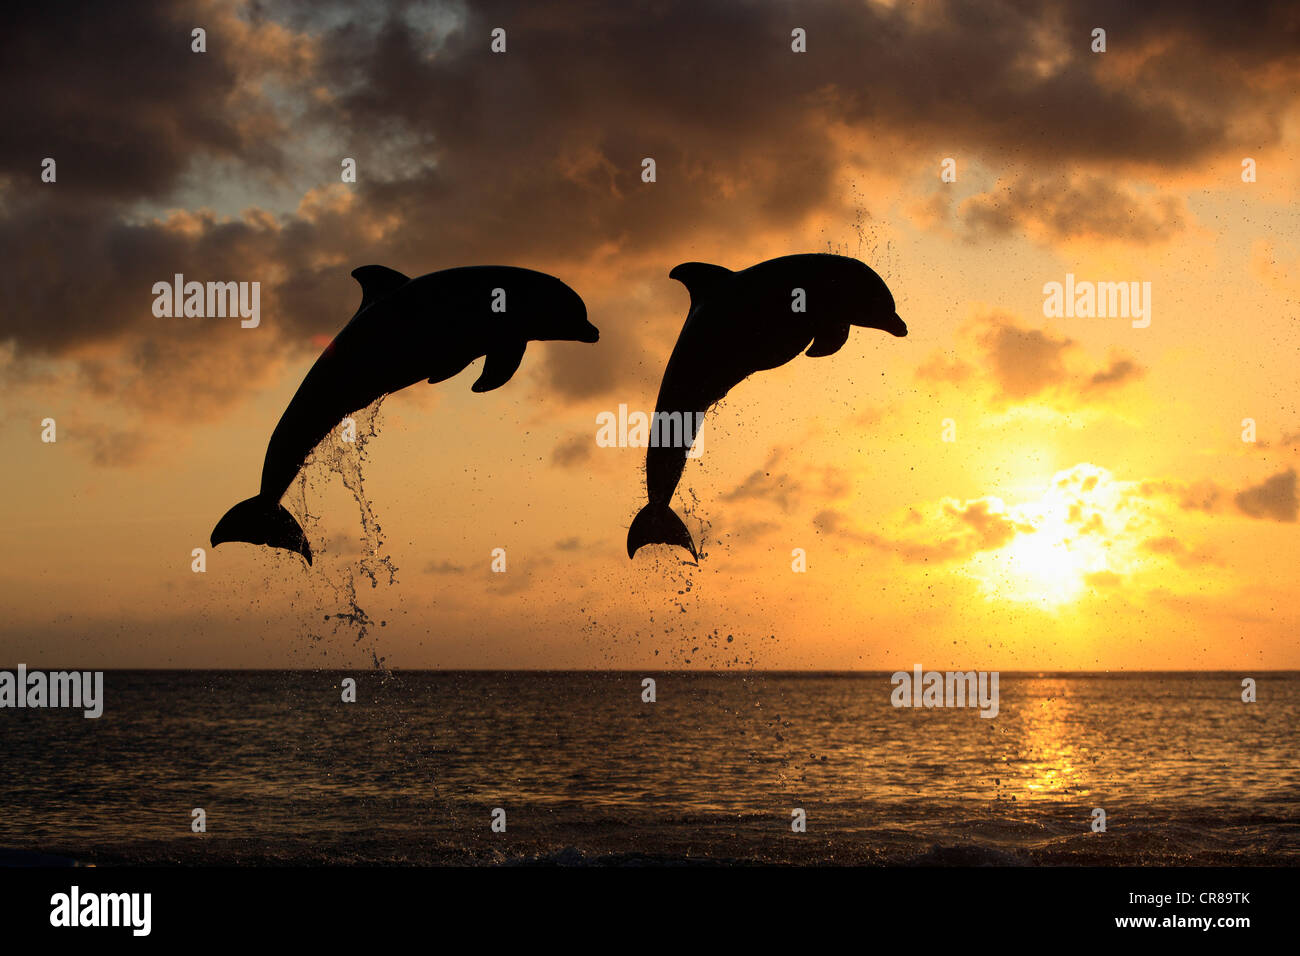 Dos delfines nariz de botella (Tursiops truncatus), adulto, saltando al atardecer, Roatán, Honduras, El Caribe, América Central Foto de stock